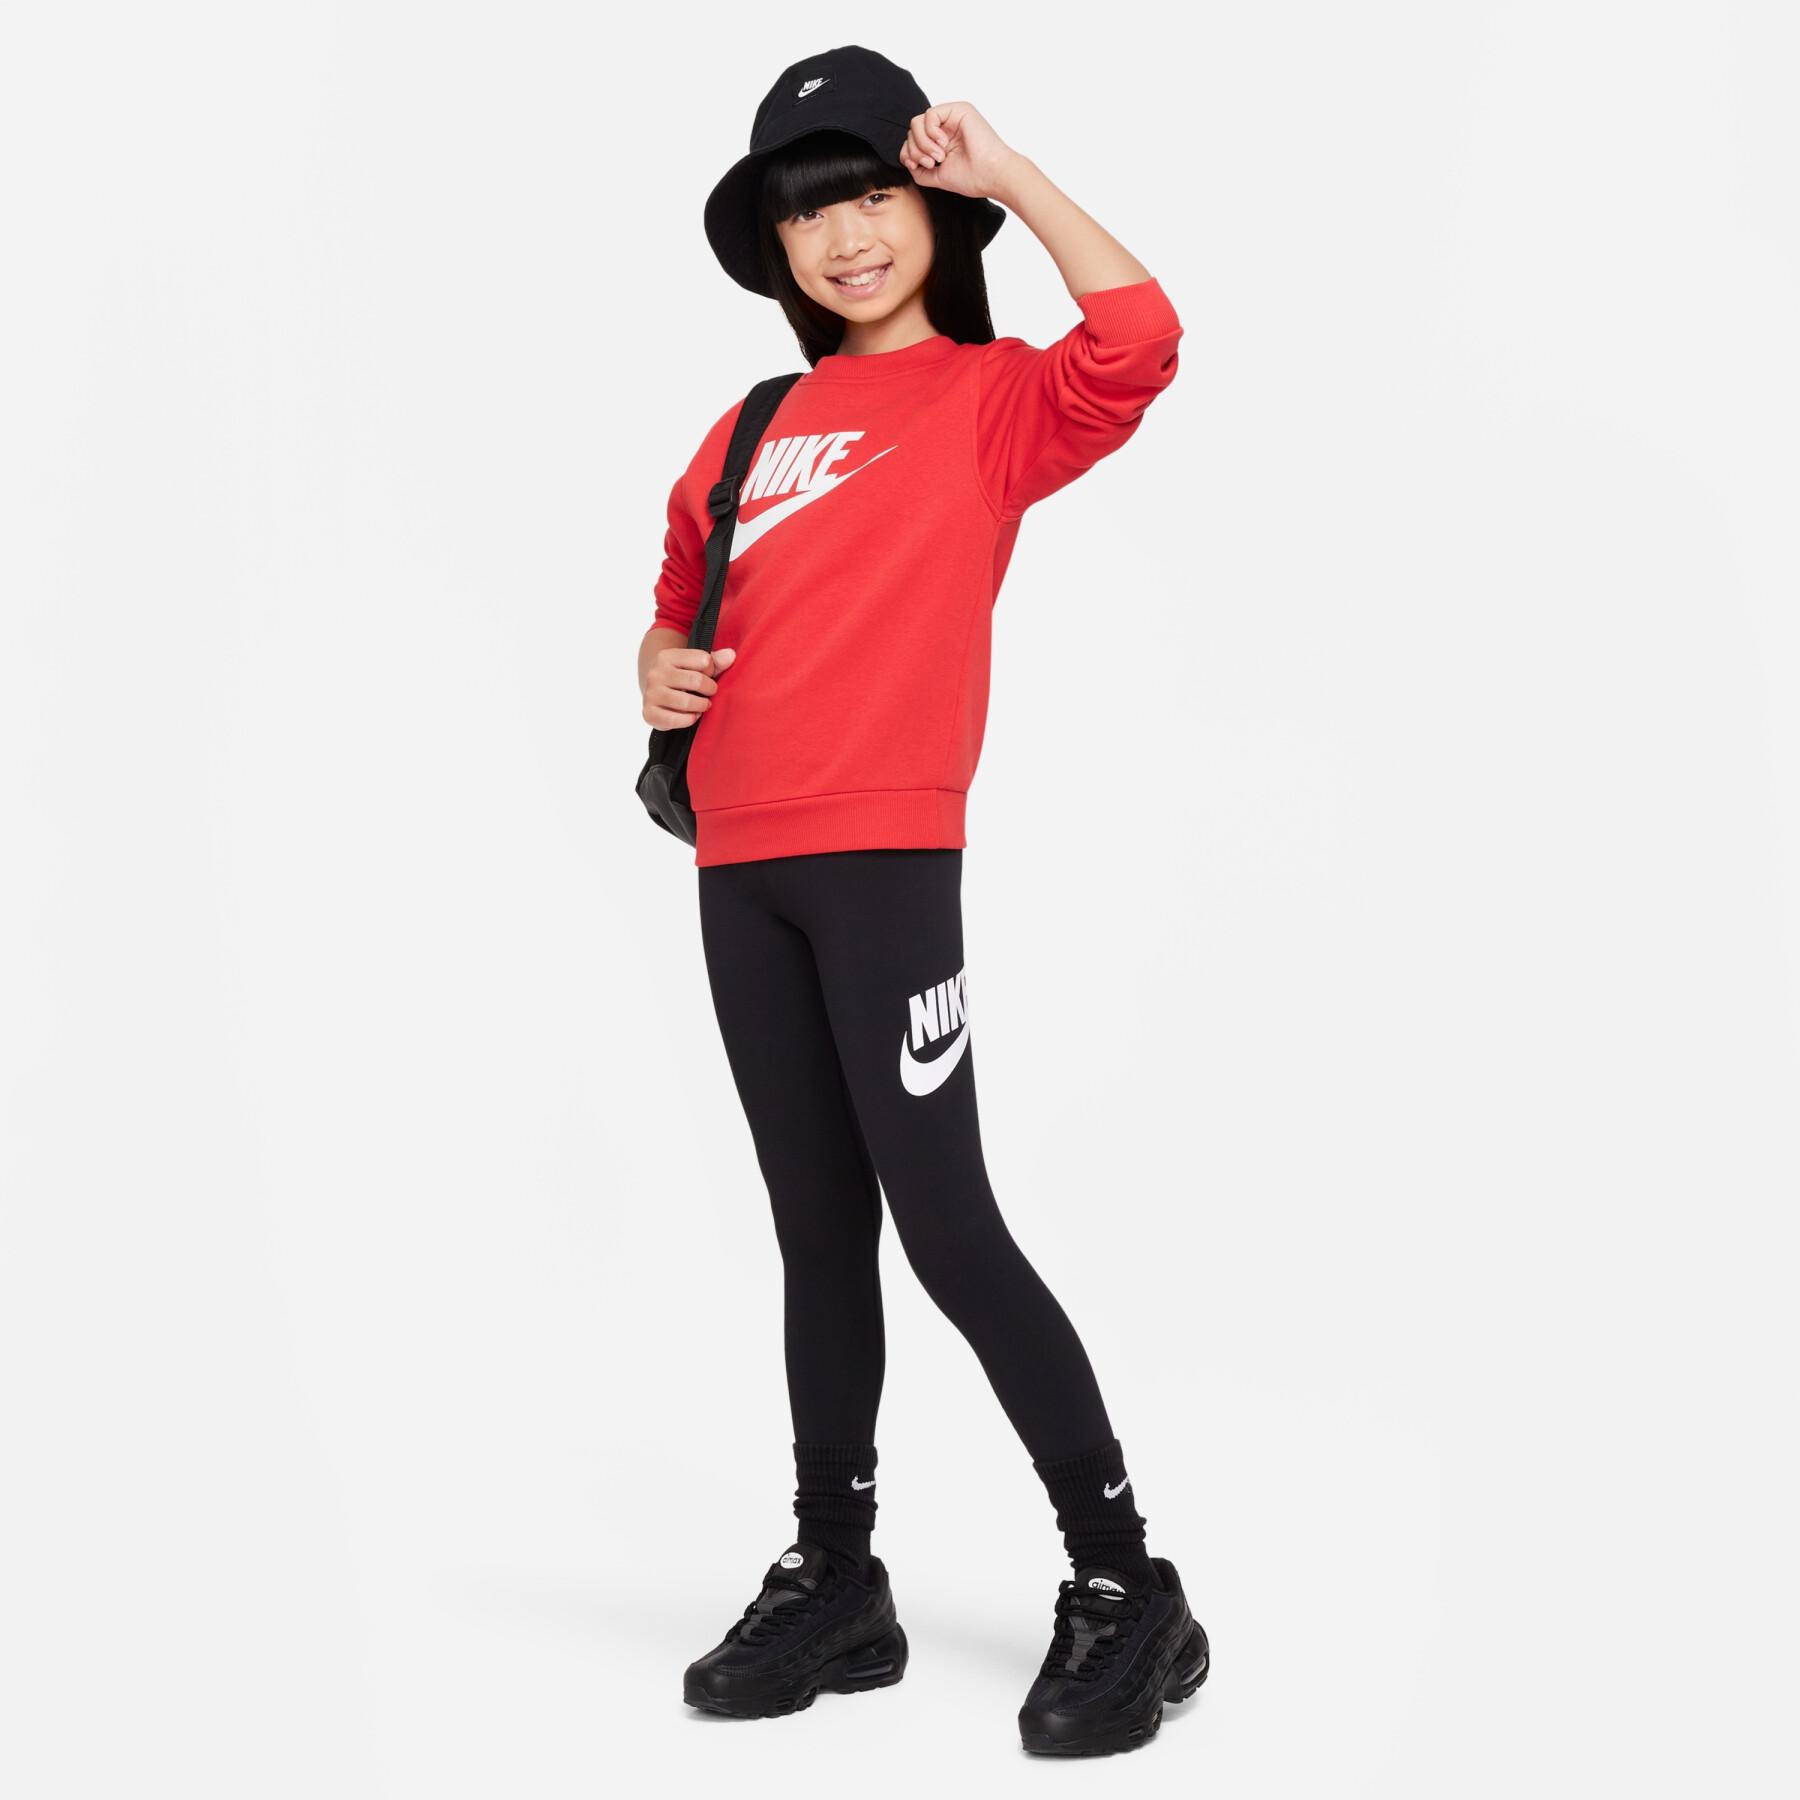 Children's mid-rise leggings Nike Essentials